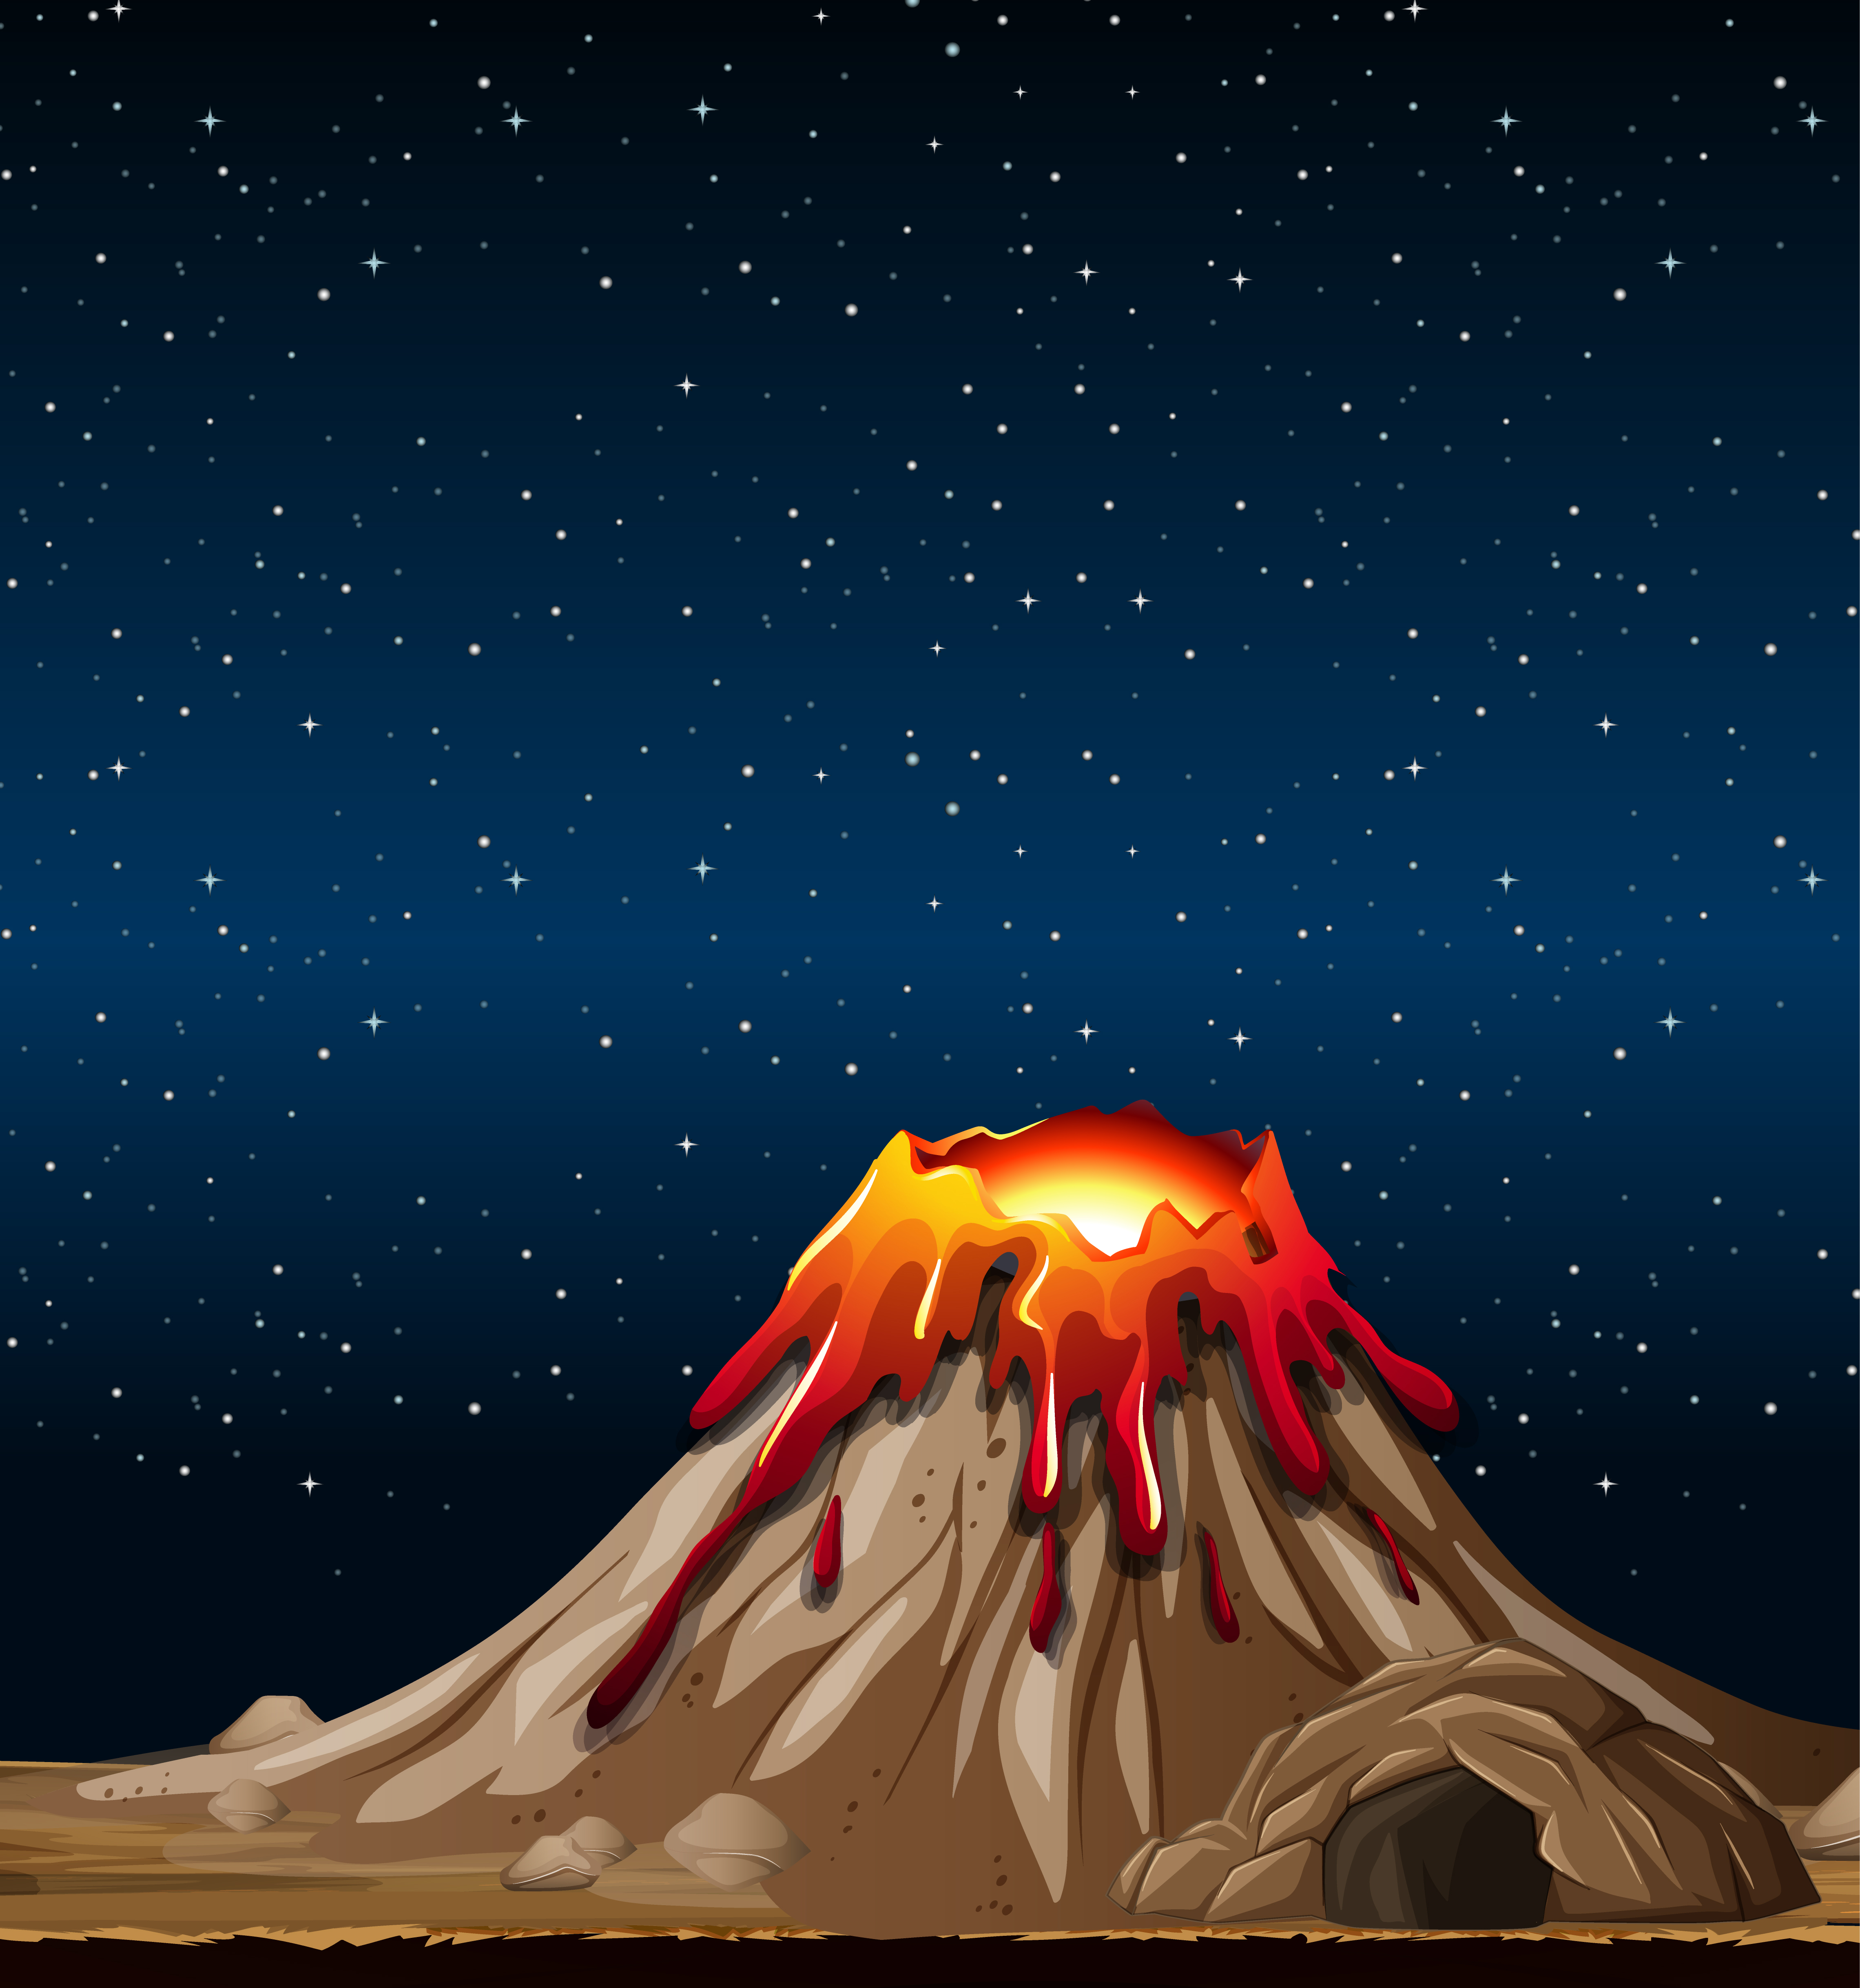 Volcano eruption in nature scene at night 1591179 Vector Art at Vecteezy